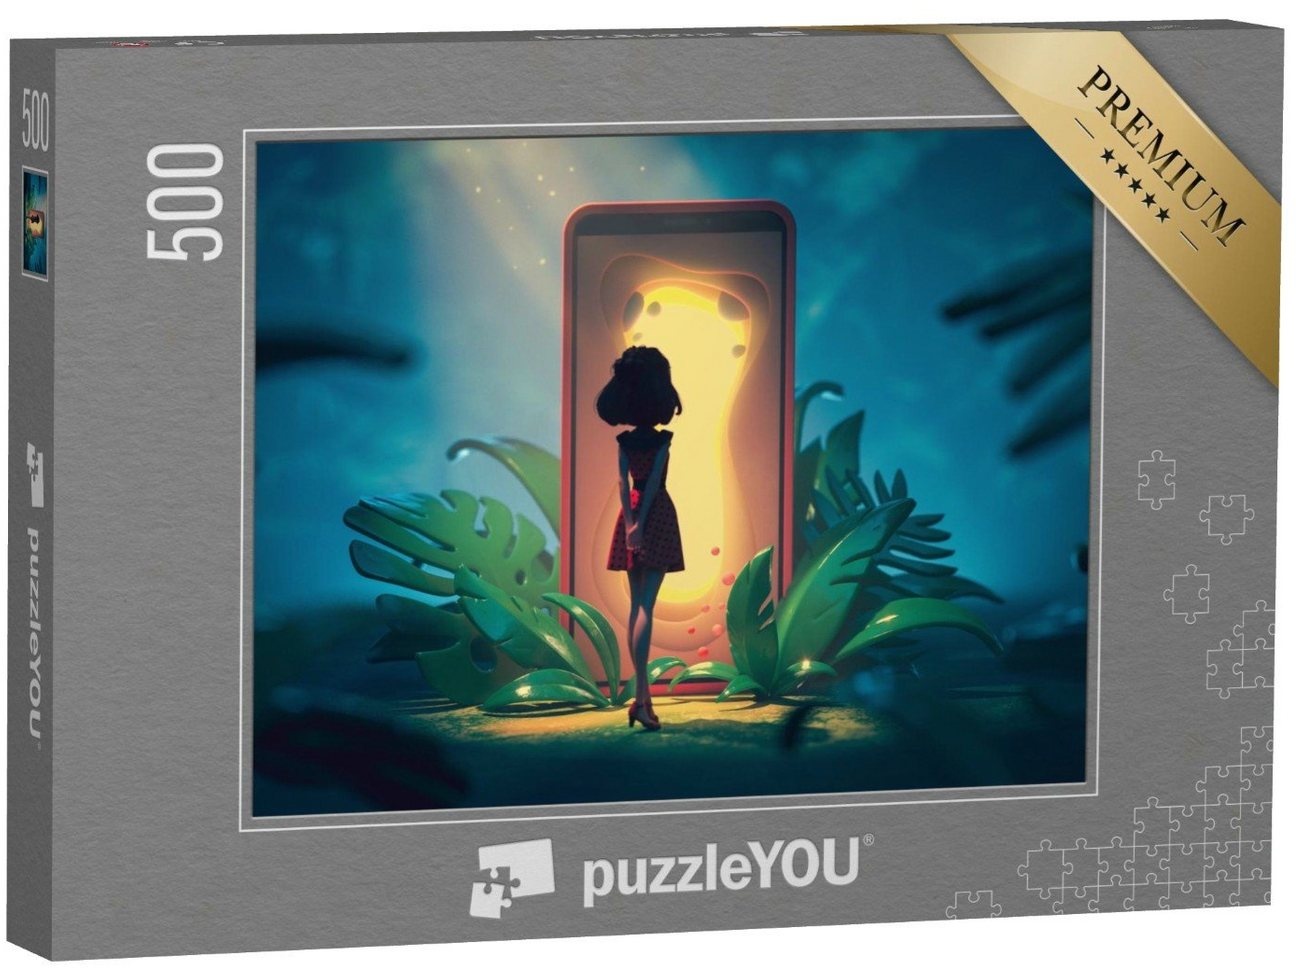 puzzleYOU Puzzle Das Smartphone, Tor zu einer anderen Welt, 500 Puzzleteile, puzzleYOU-Kollektionen Illustrationen